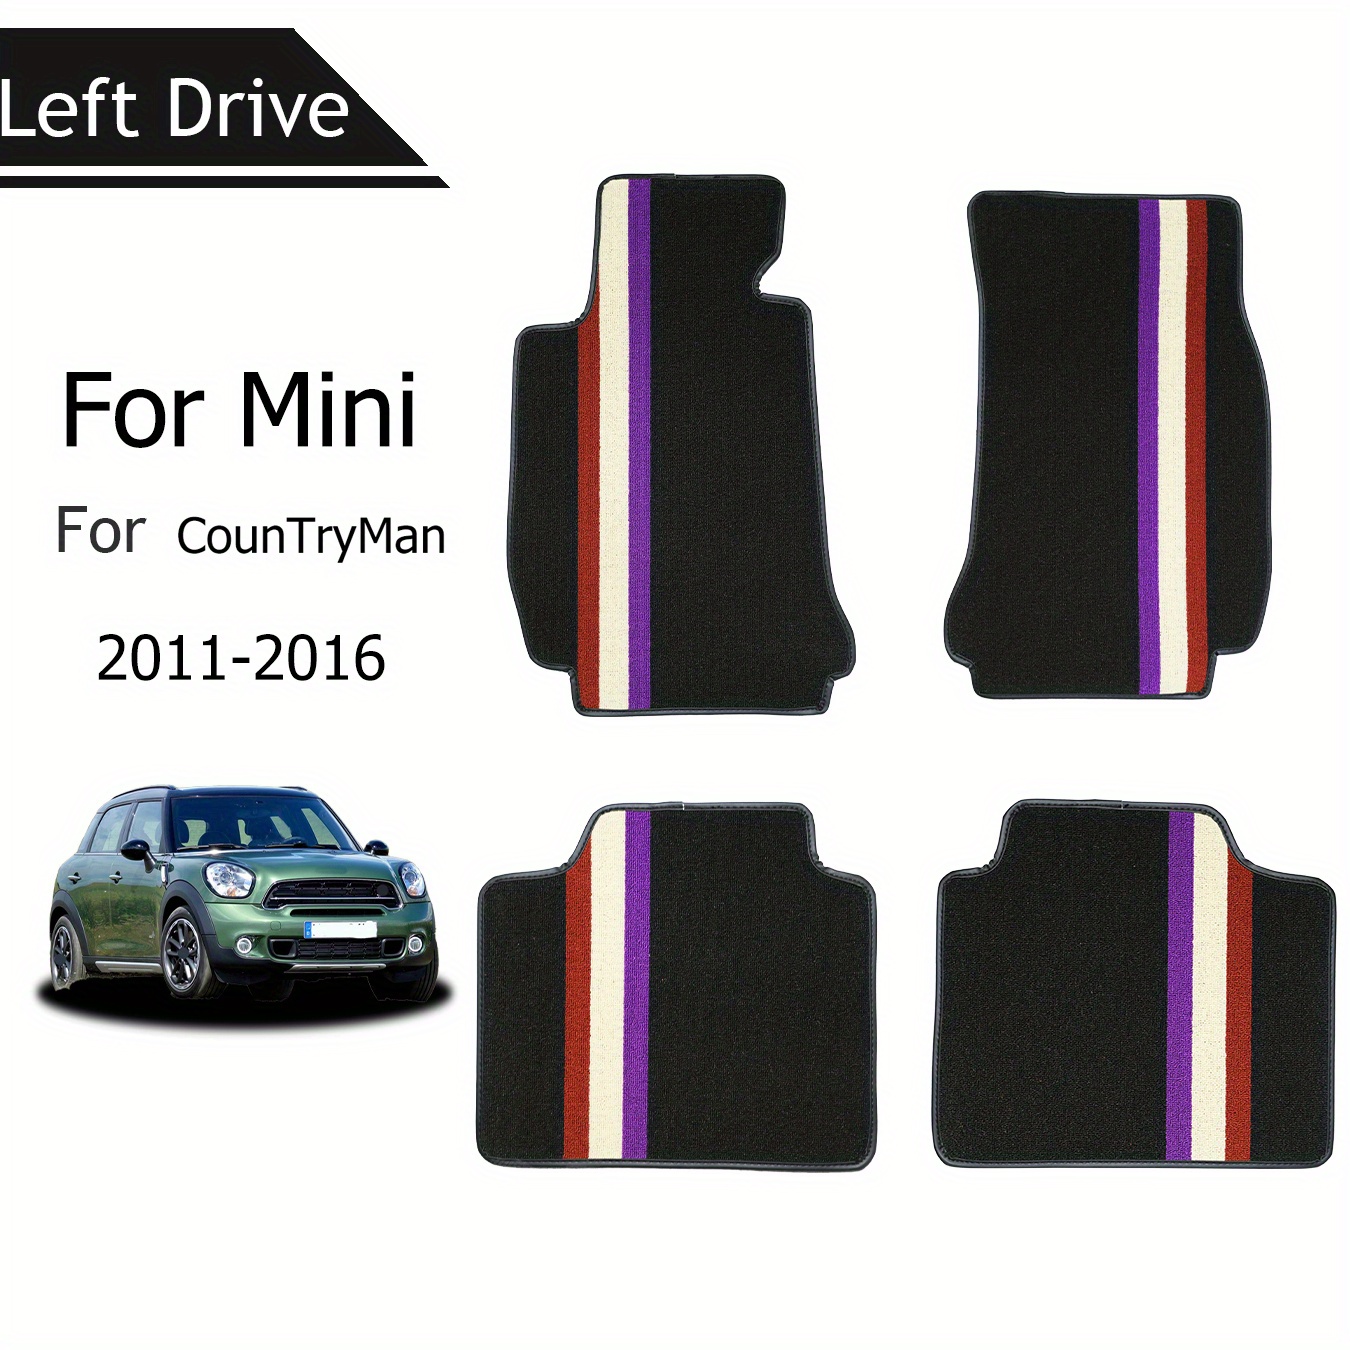 

2pcs/4pcs Car Floor Mats Fits For Mini For Countryman 2011-2016 Car Interior Accessories